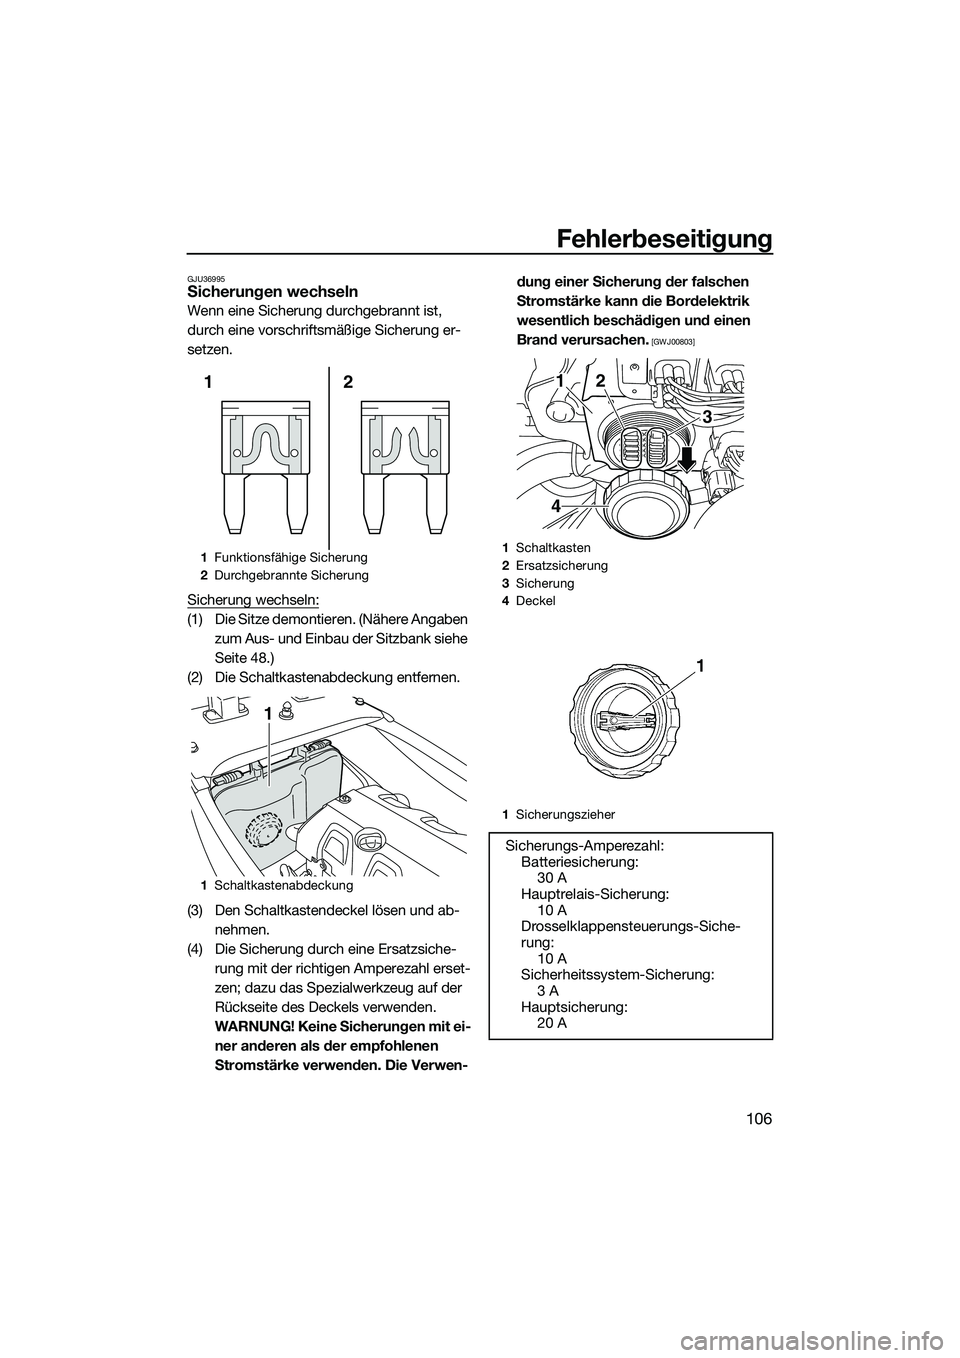 YAMAHA FX HO 2014  Betriebsanleitungen (in German) Fehlerbeseitigung
106
GJU36995Sicherungen wechseln
Wenn eine Sicherung durchgebrannt ist, 
durch eine vorschriftsmäßige Sicherung er-
setzen.
Sicherung wechseln:
(1) Die Sitze demontieren. (Nähere 